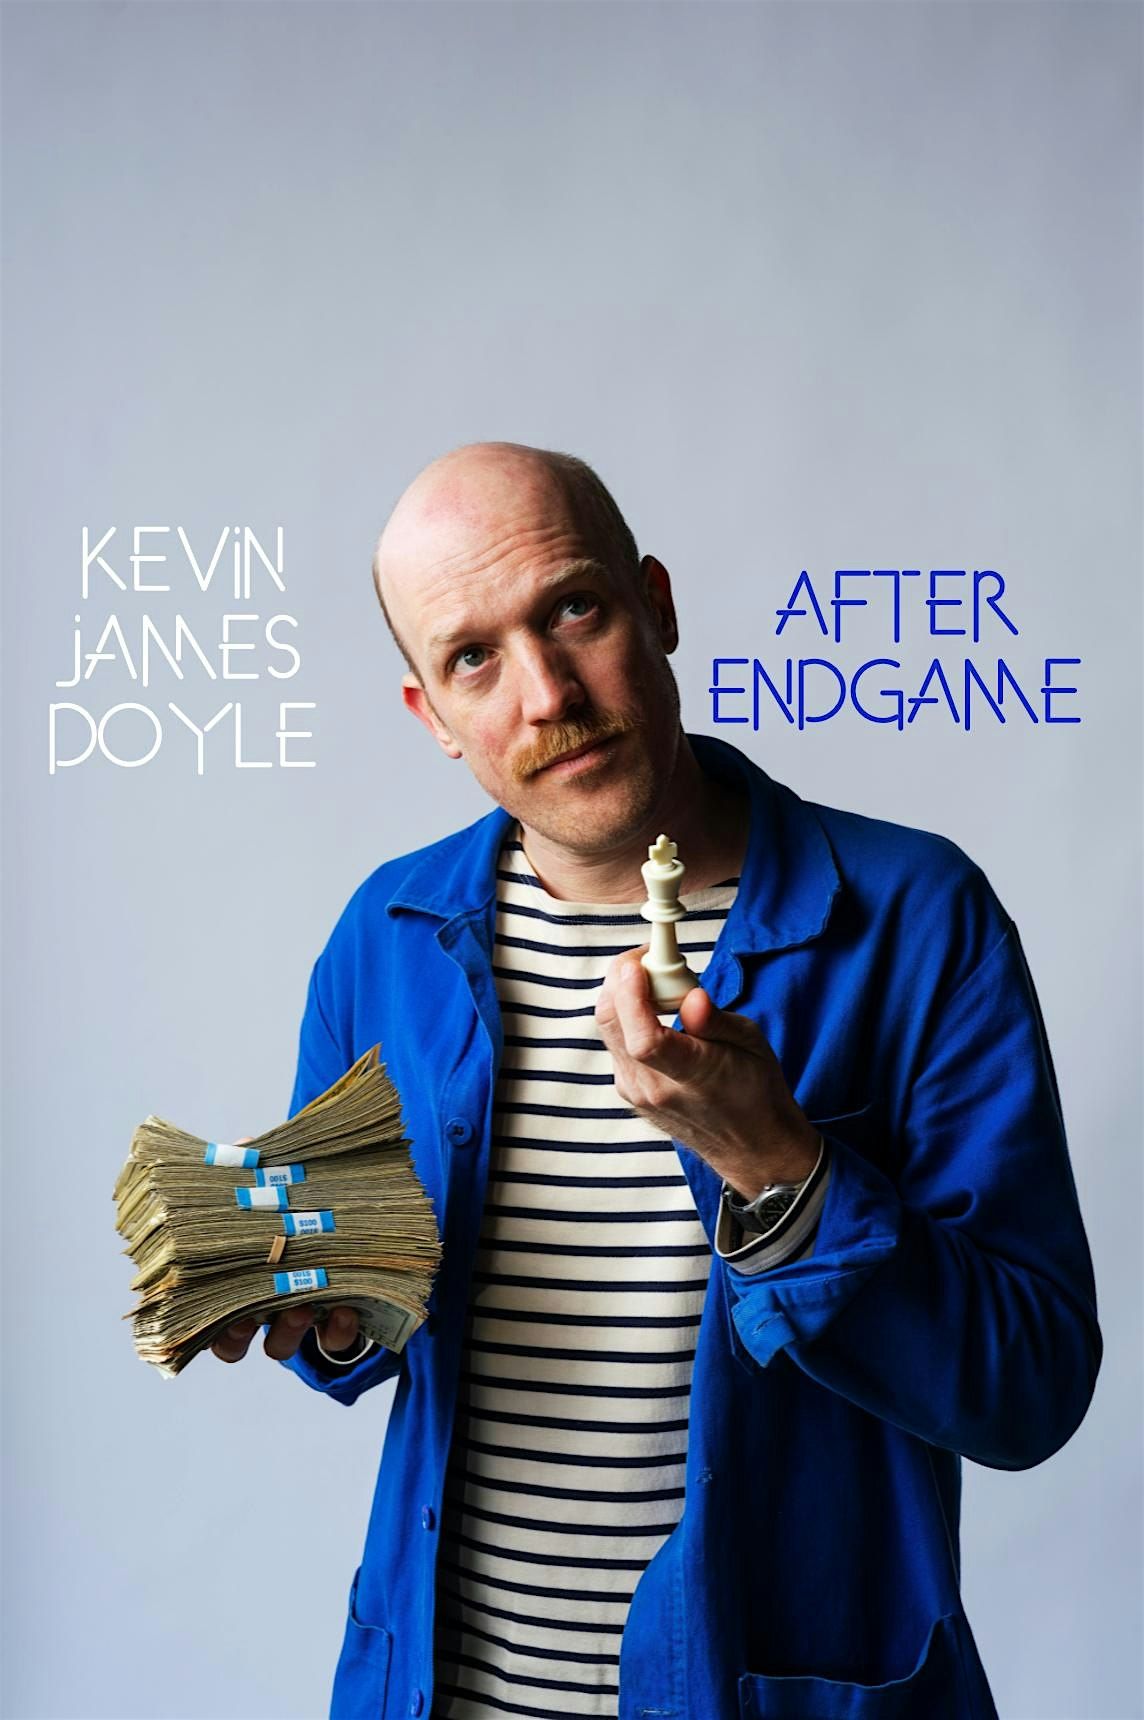 Kevin James Doyle: After Endgame